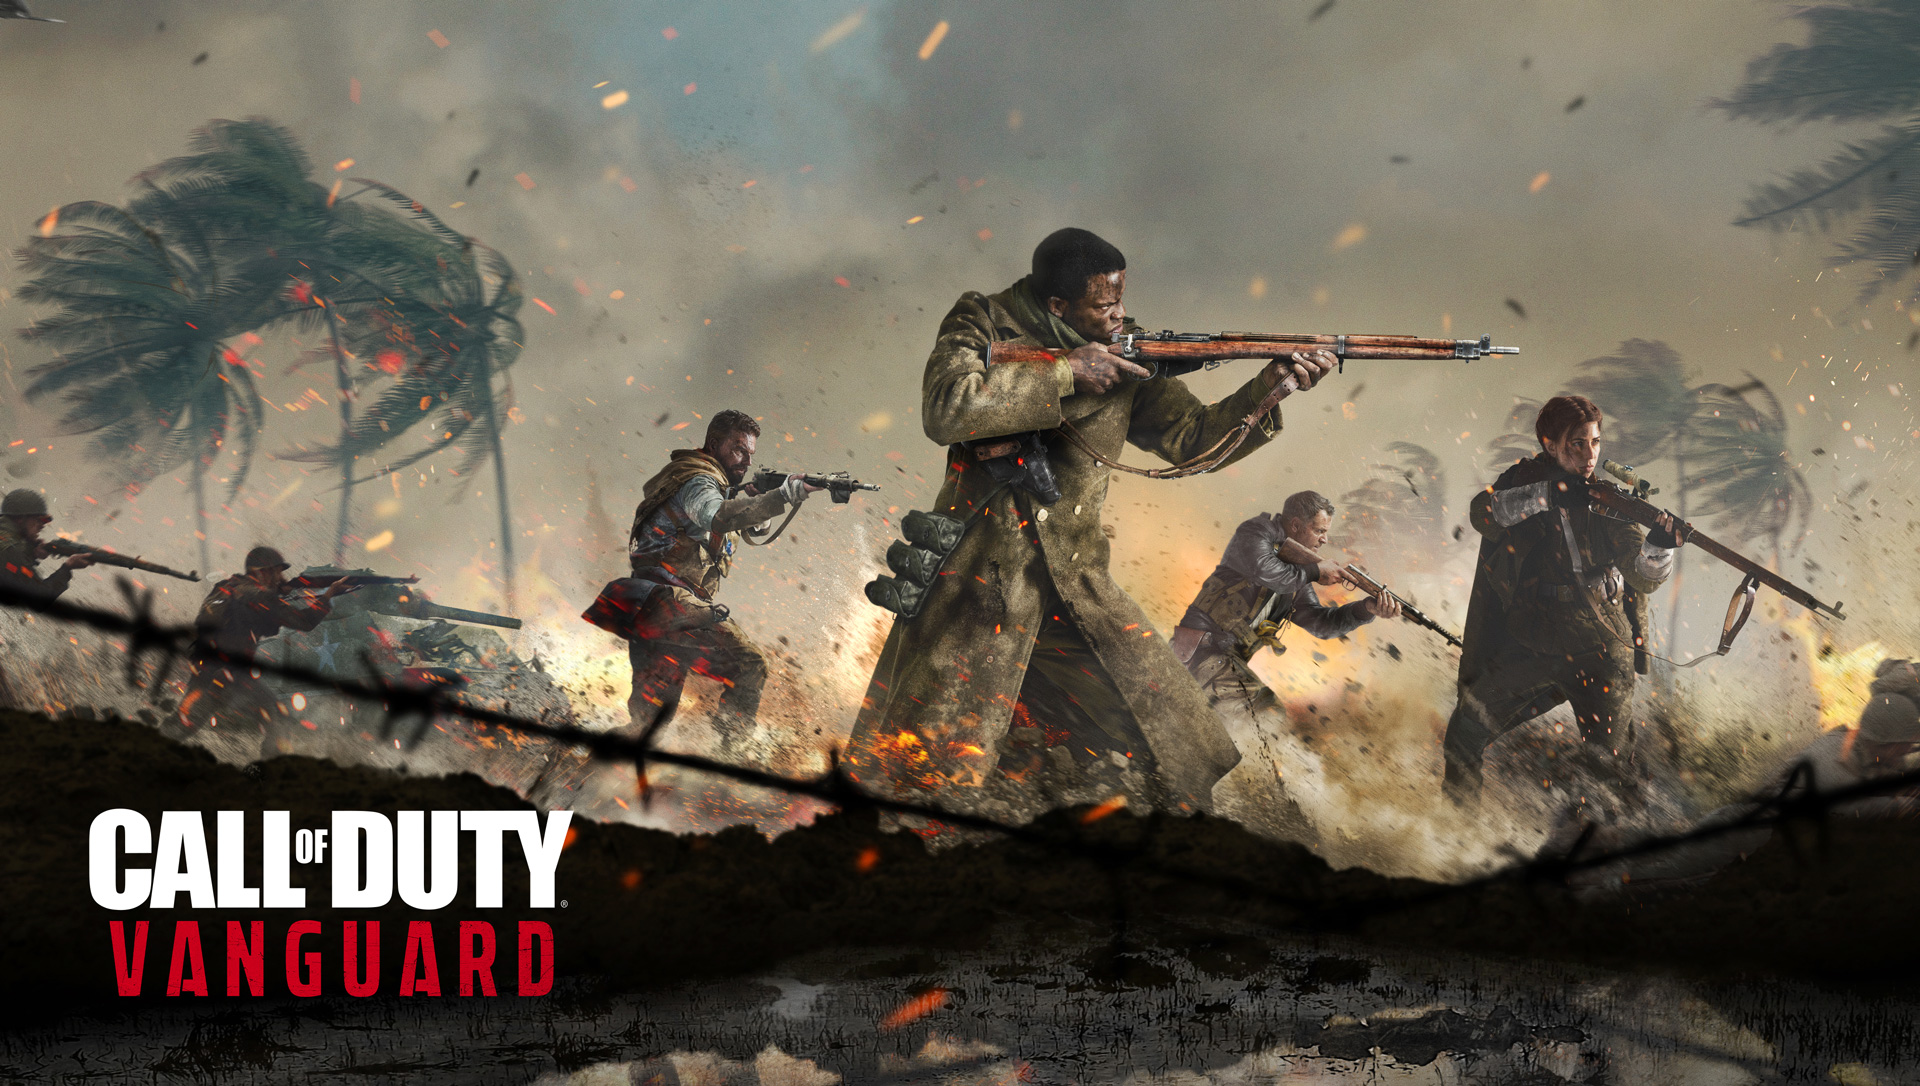 Dettagli sui bonus di pre-ordine delle edizioni di Call of Duty®: Vanguard